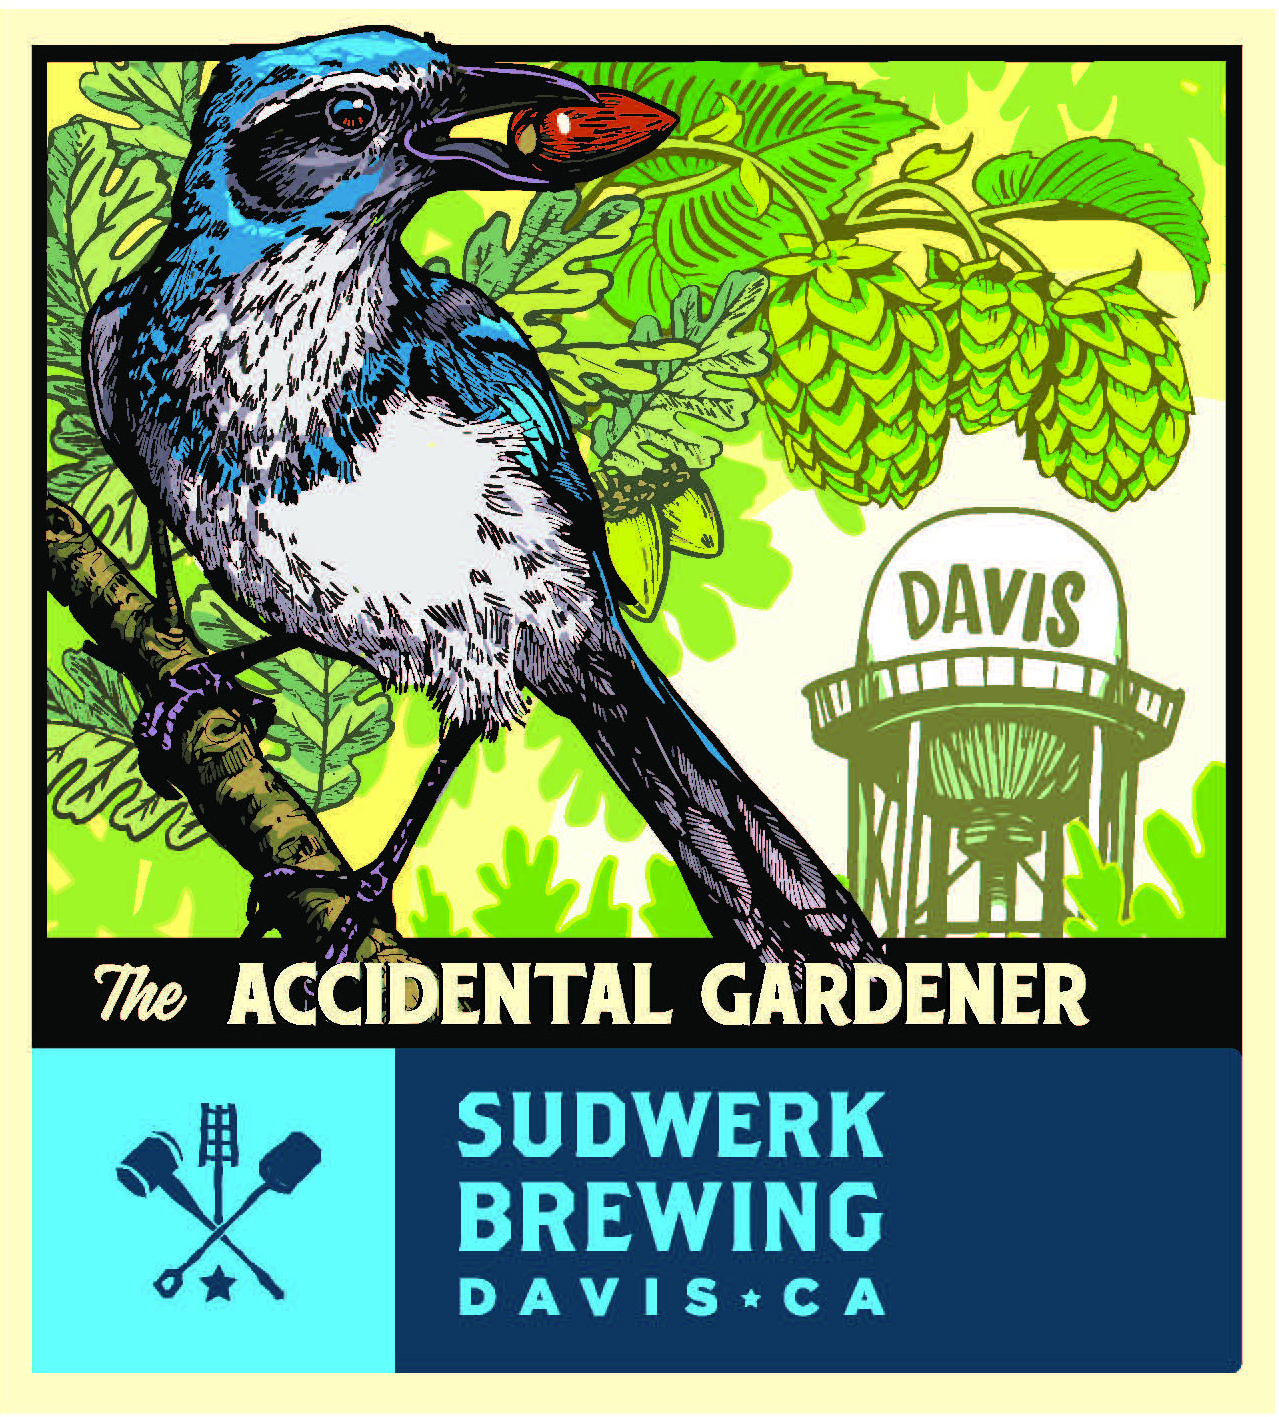 Image of Sudwerk's "The Accidental Gardener" beer label.